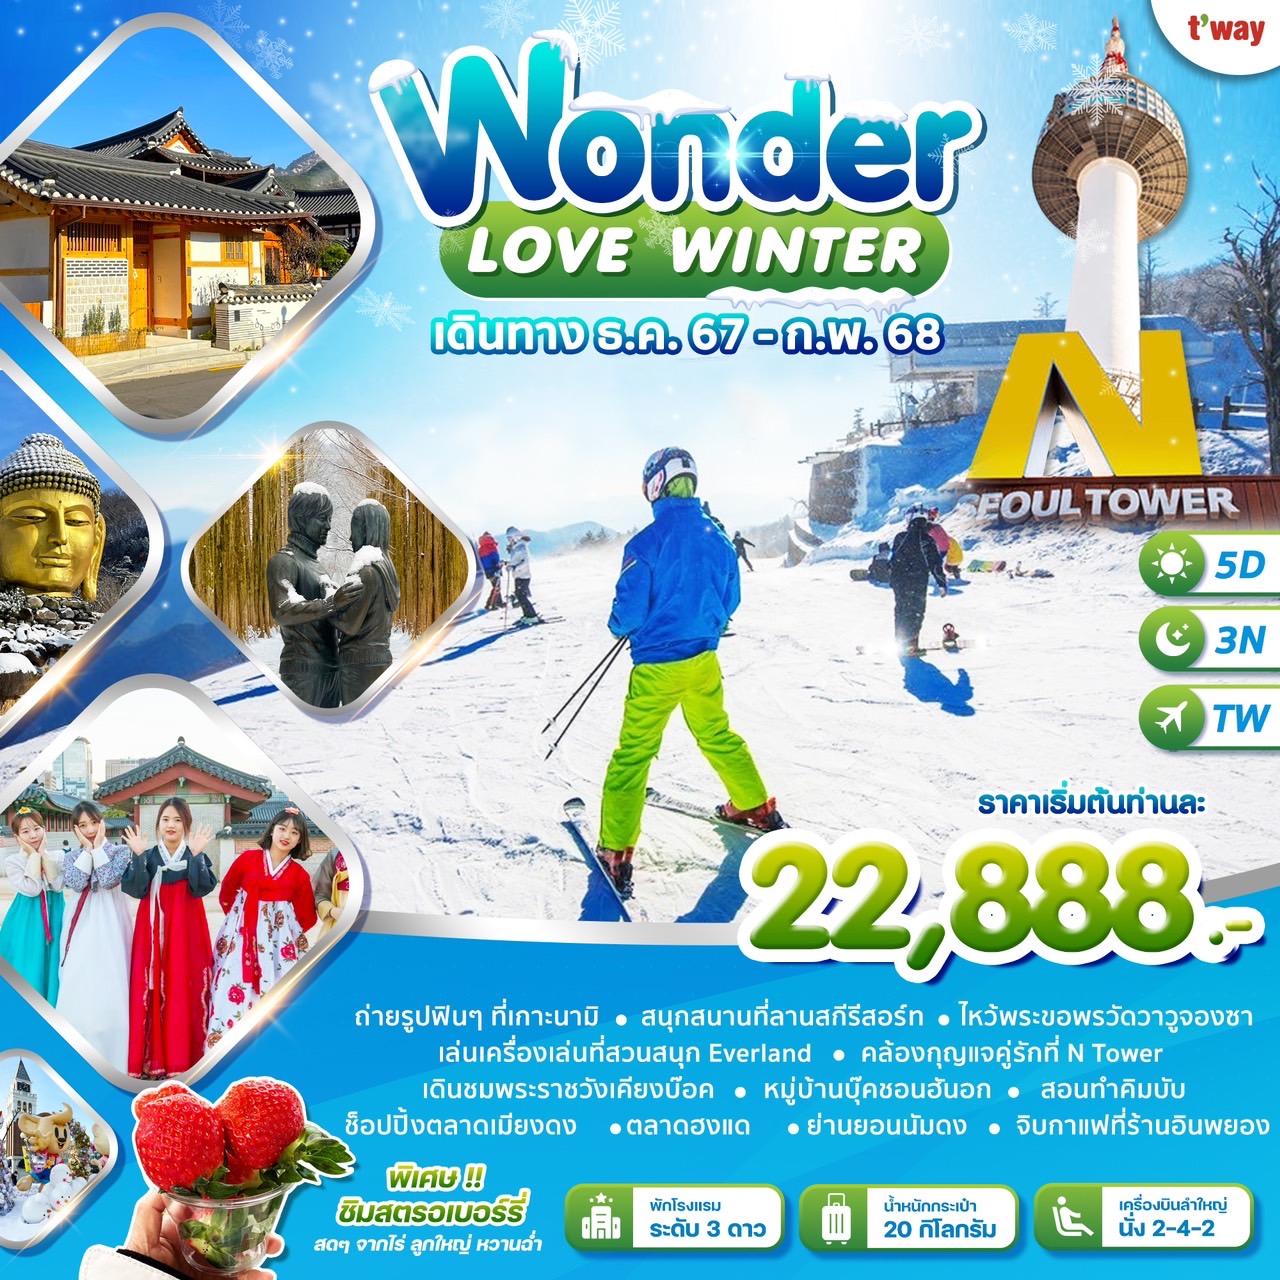 ทัวร์เกาหลี Wonder Love Winter 5วัน 3คืน (TW)